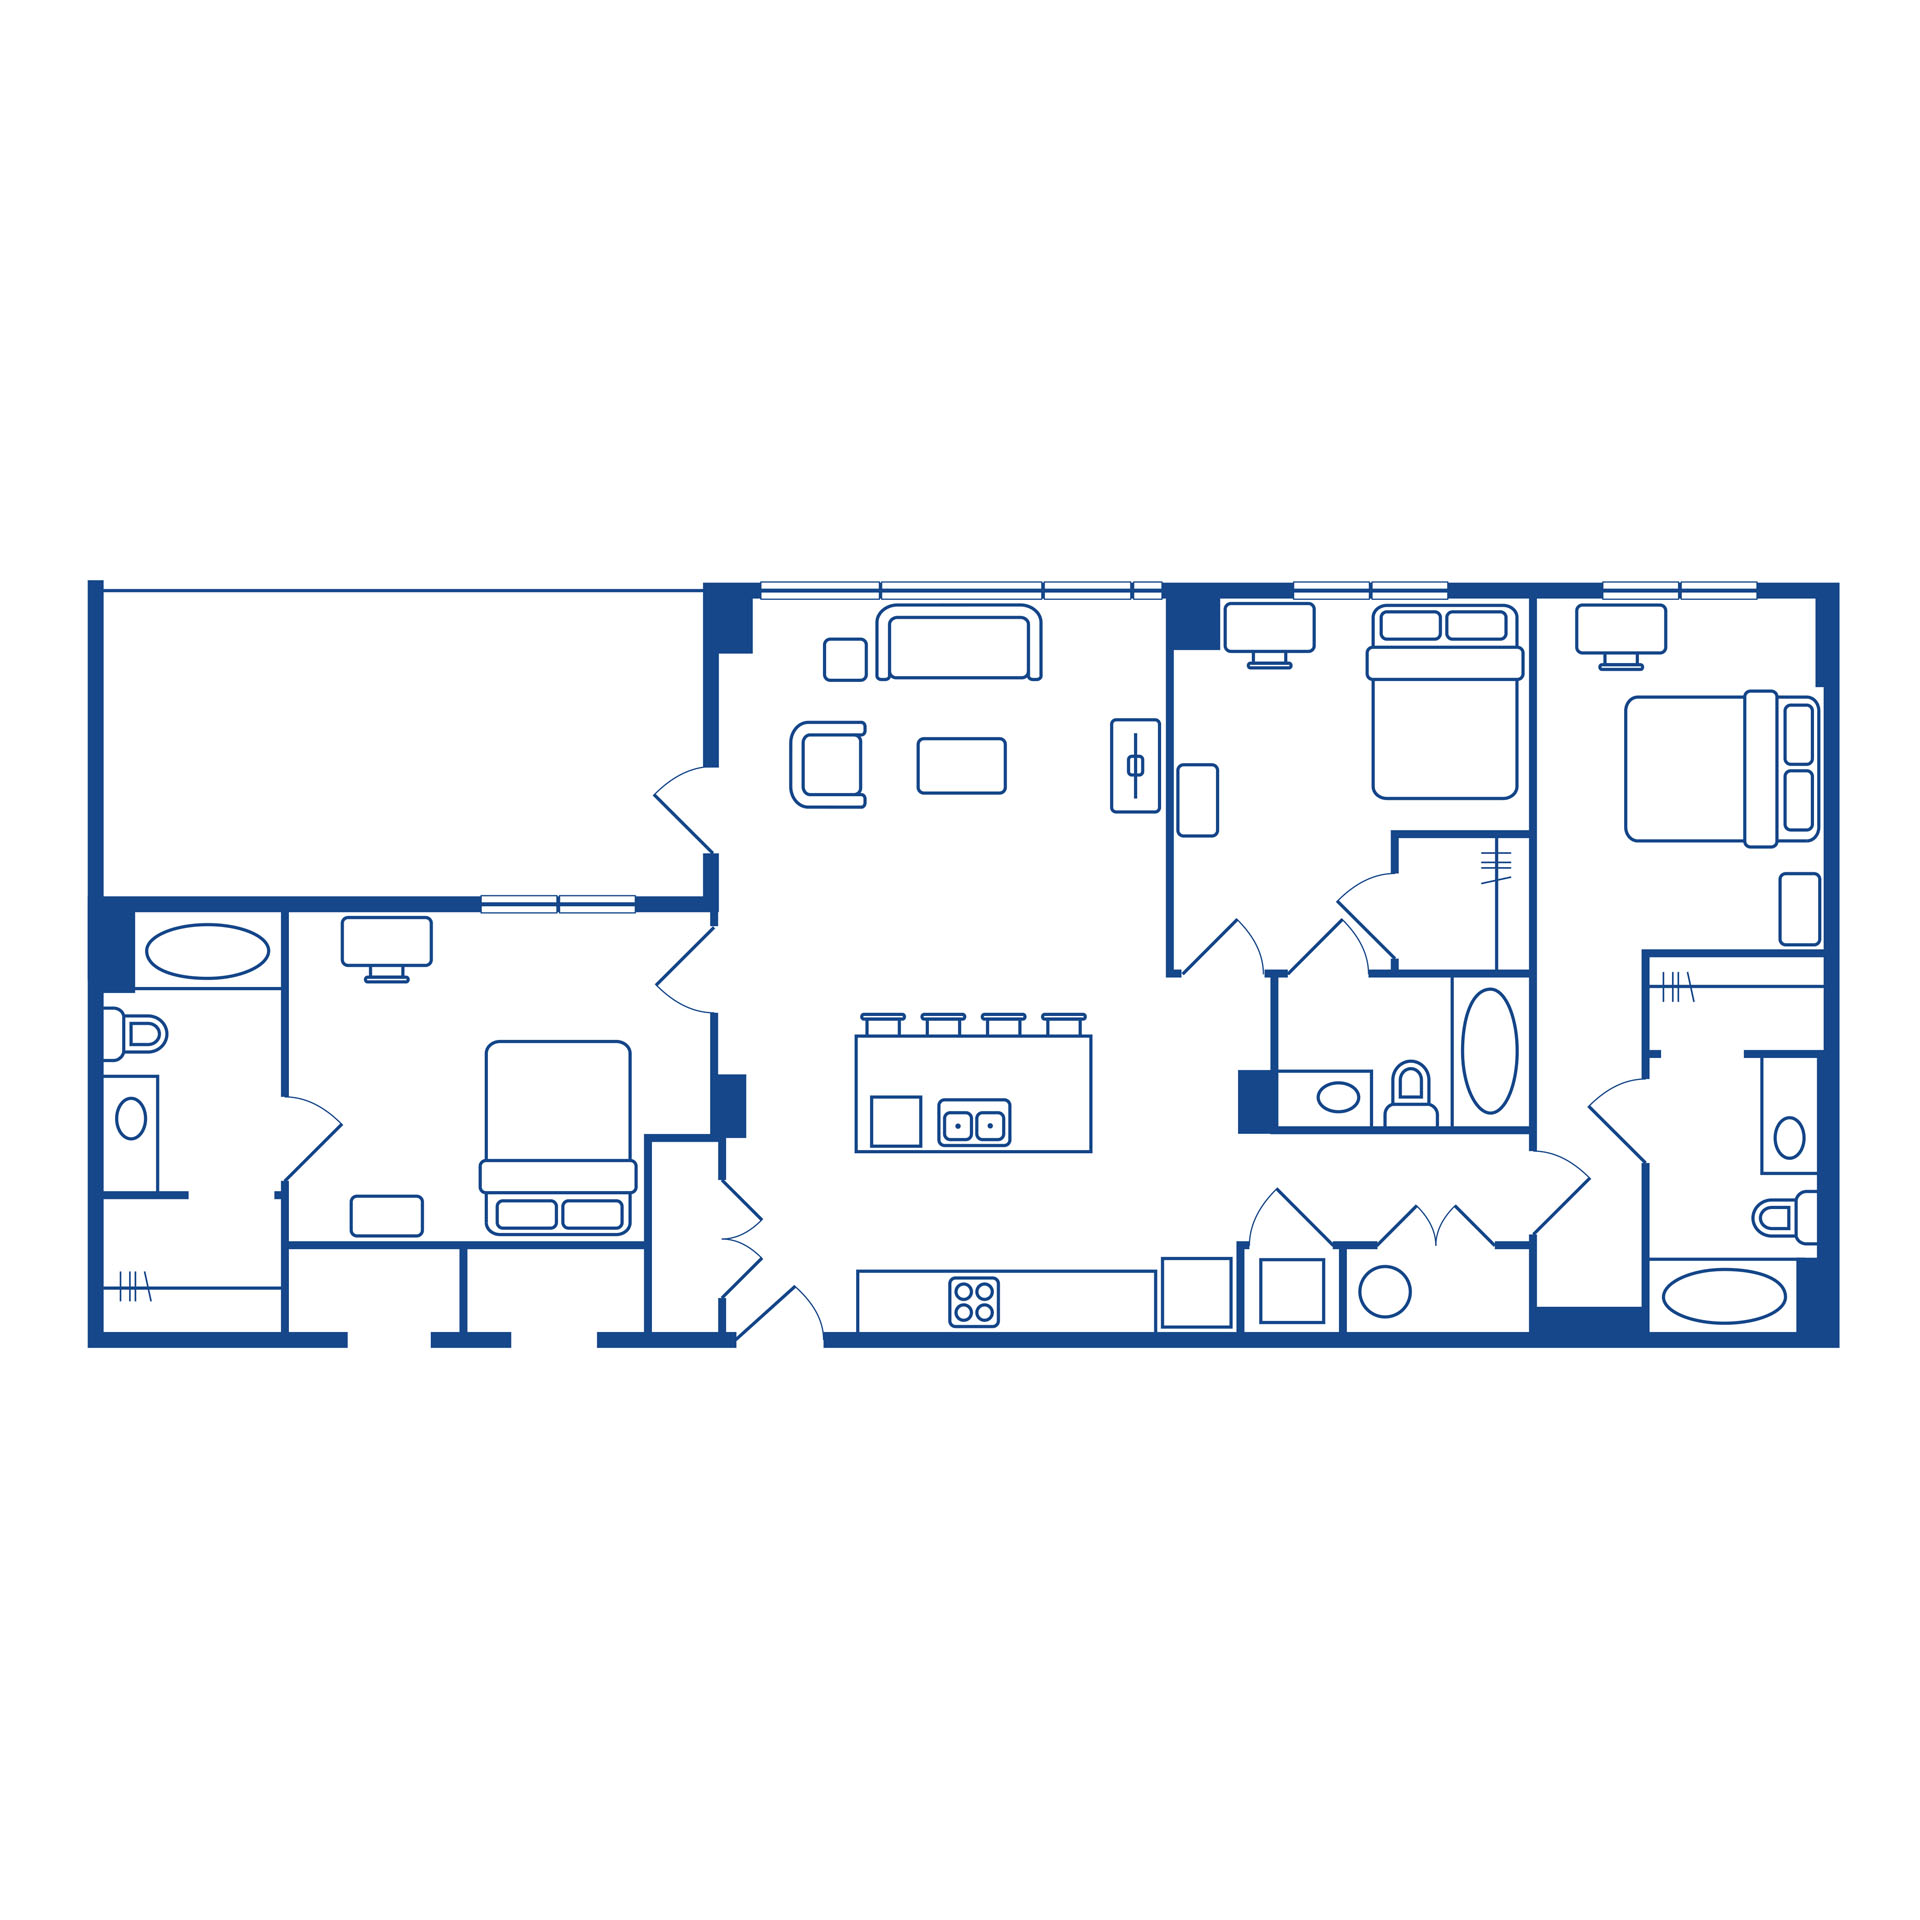 3 bedroom / 3 bath penthouse floor plan